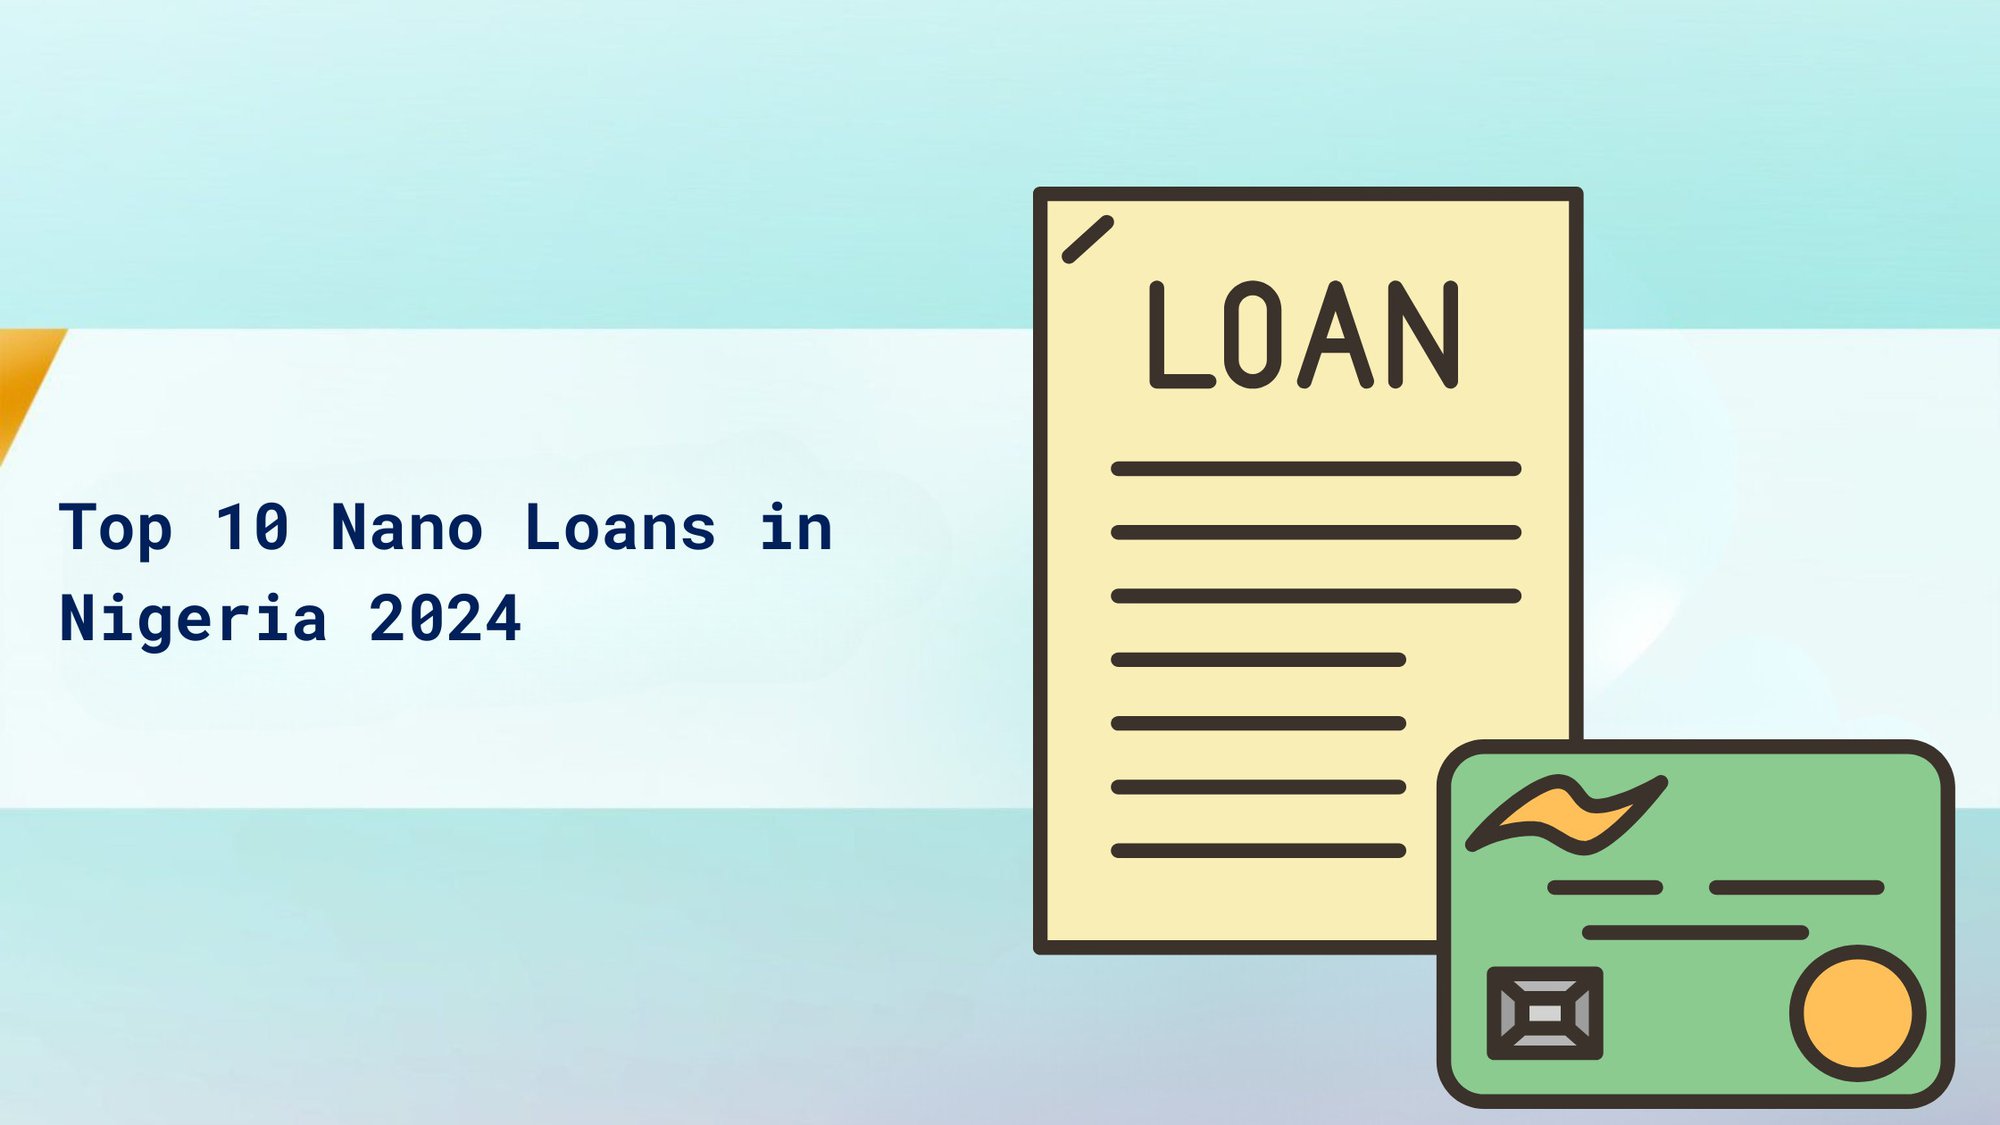 Top 10 Nano Loans in Nigeria 2024 cover